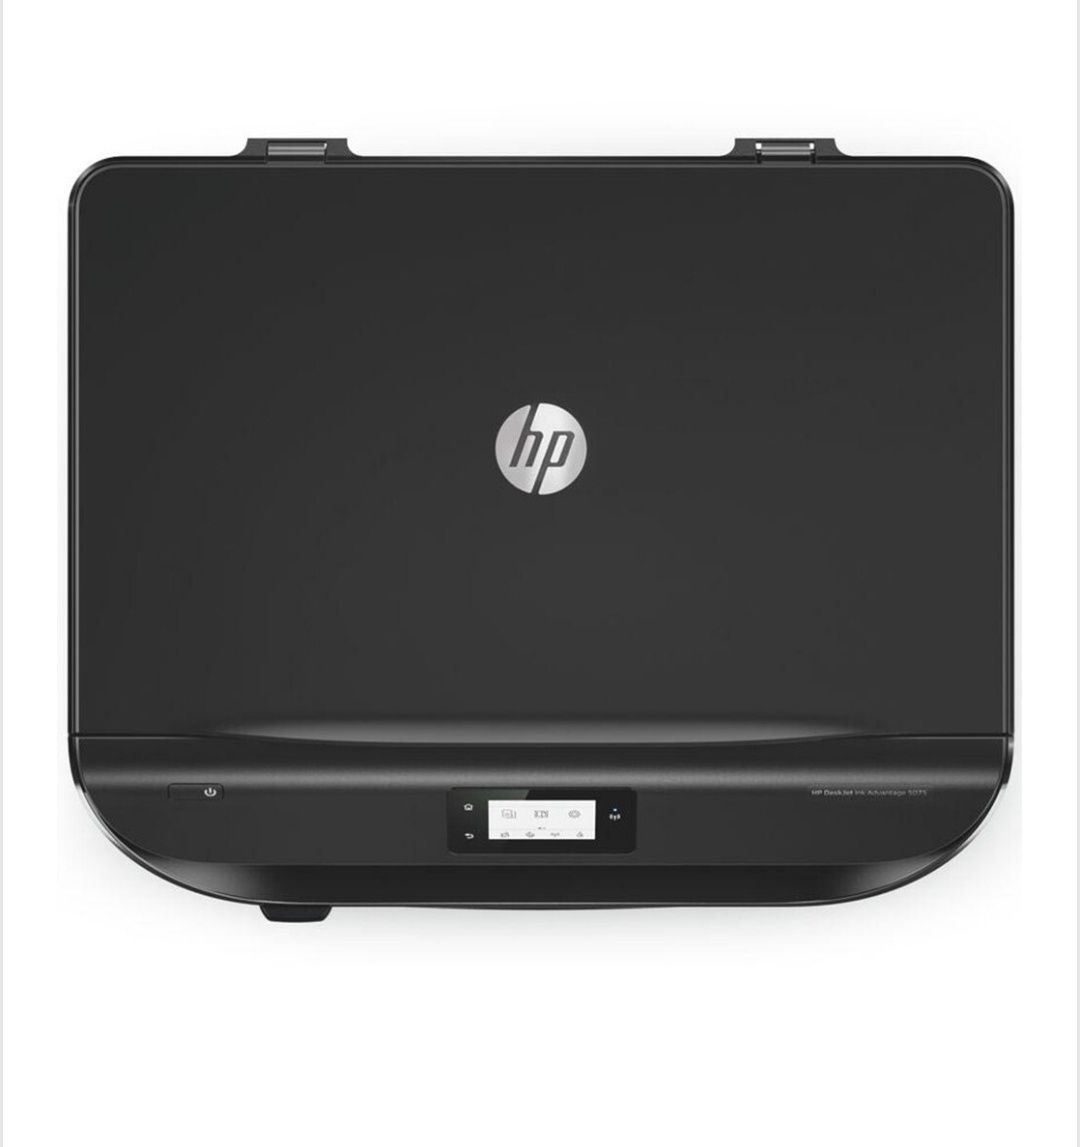 Multifunctional inkjet HP Deskjet Ink Advantage 5075 All-in-one, A4